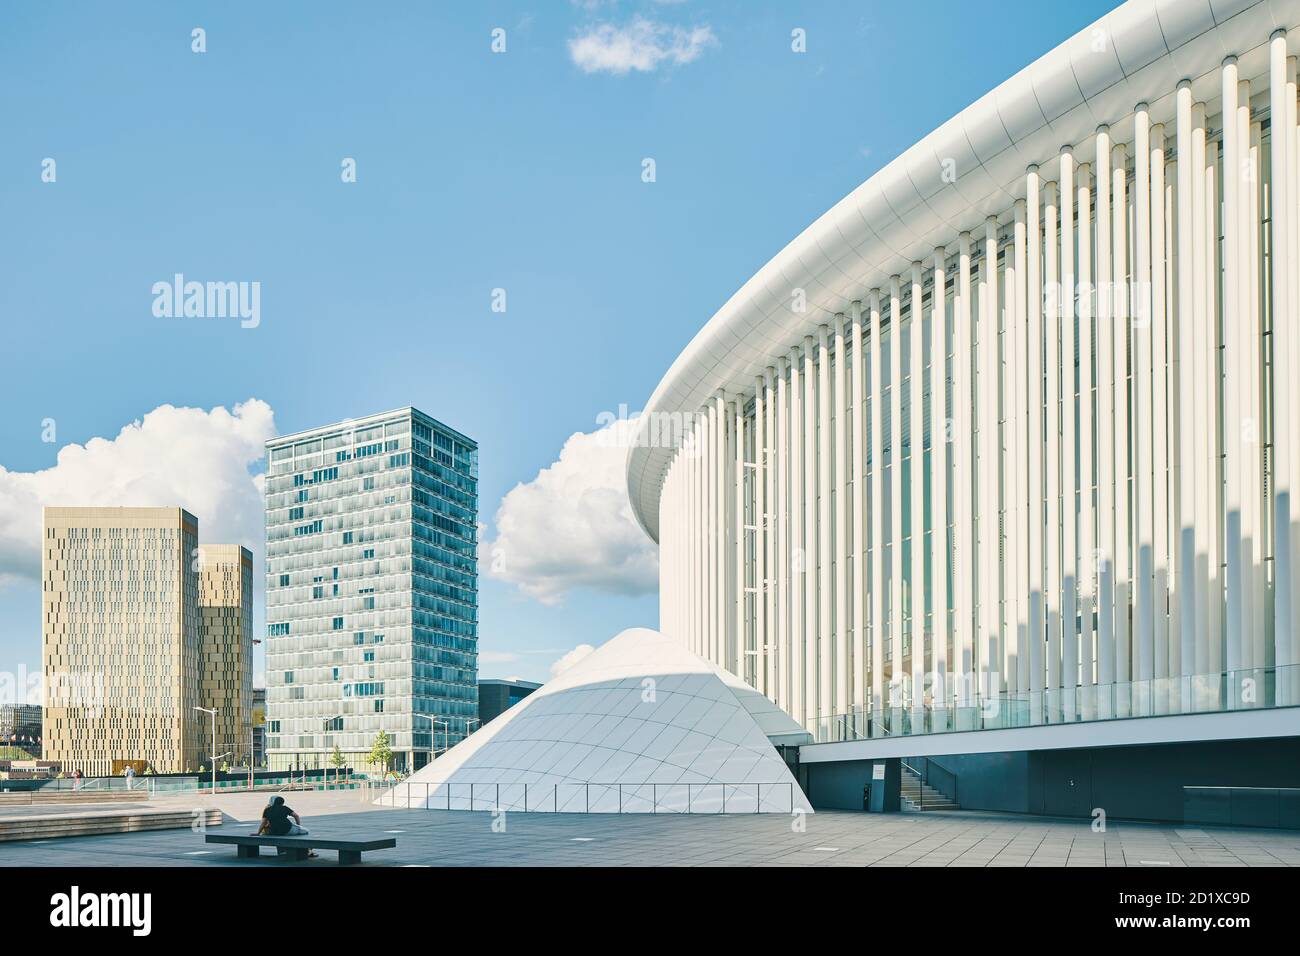 La Philharmonie nell'altopiano di Kirchberg, Lussemburgo, si trova al centro di una piazza triangolare circondata da uffici amministrativi dell'UE. E' composto da 823 sottili colonne di acciaio bianco, disposte su tre o quattro file. Completato nel 2005. Foto Stock